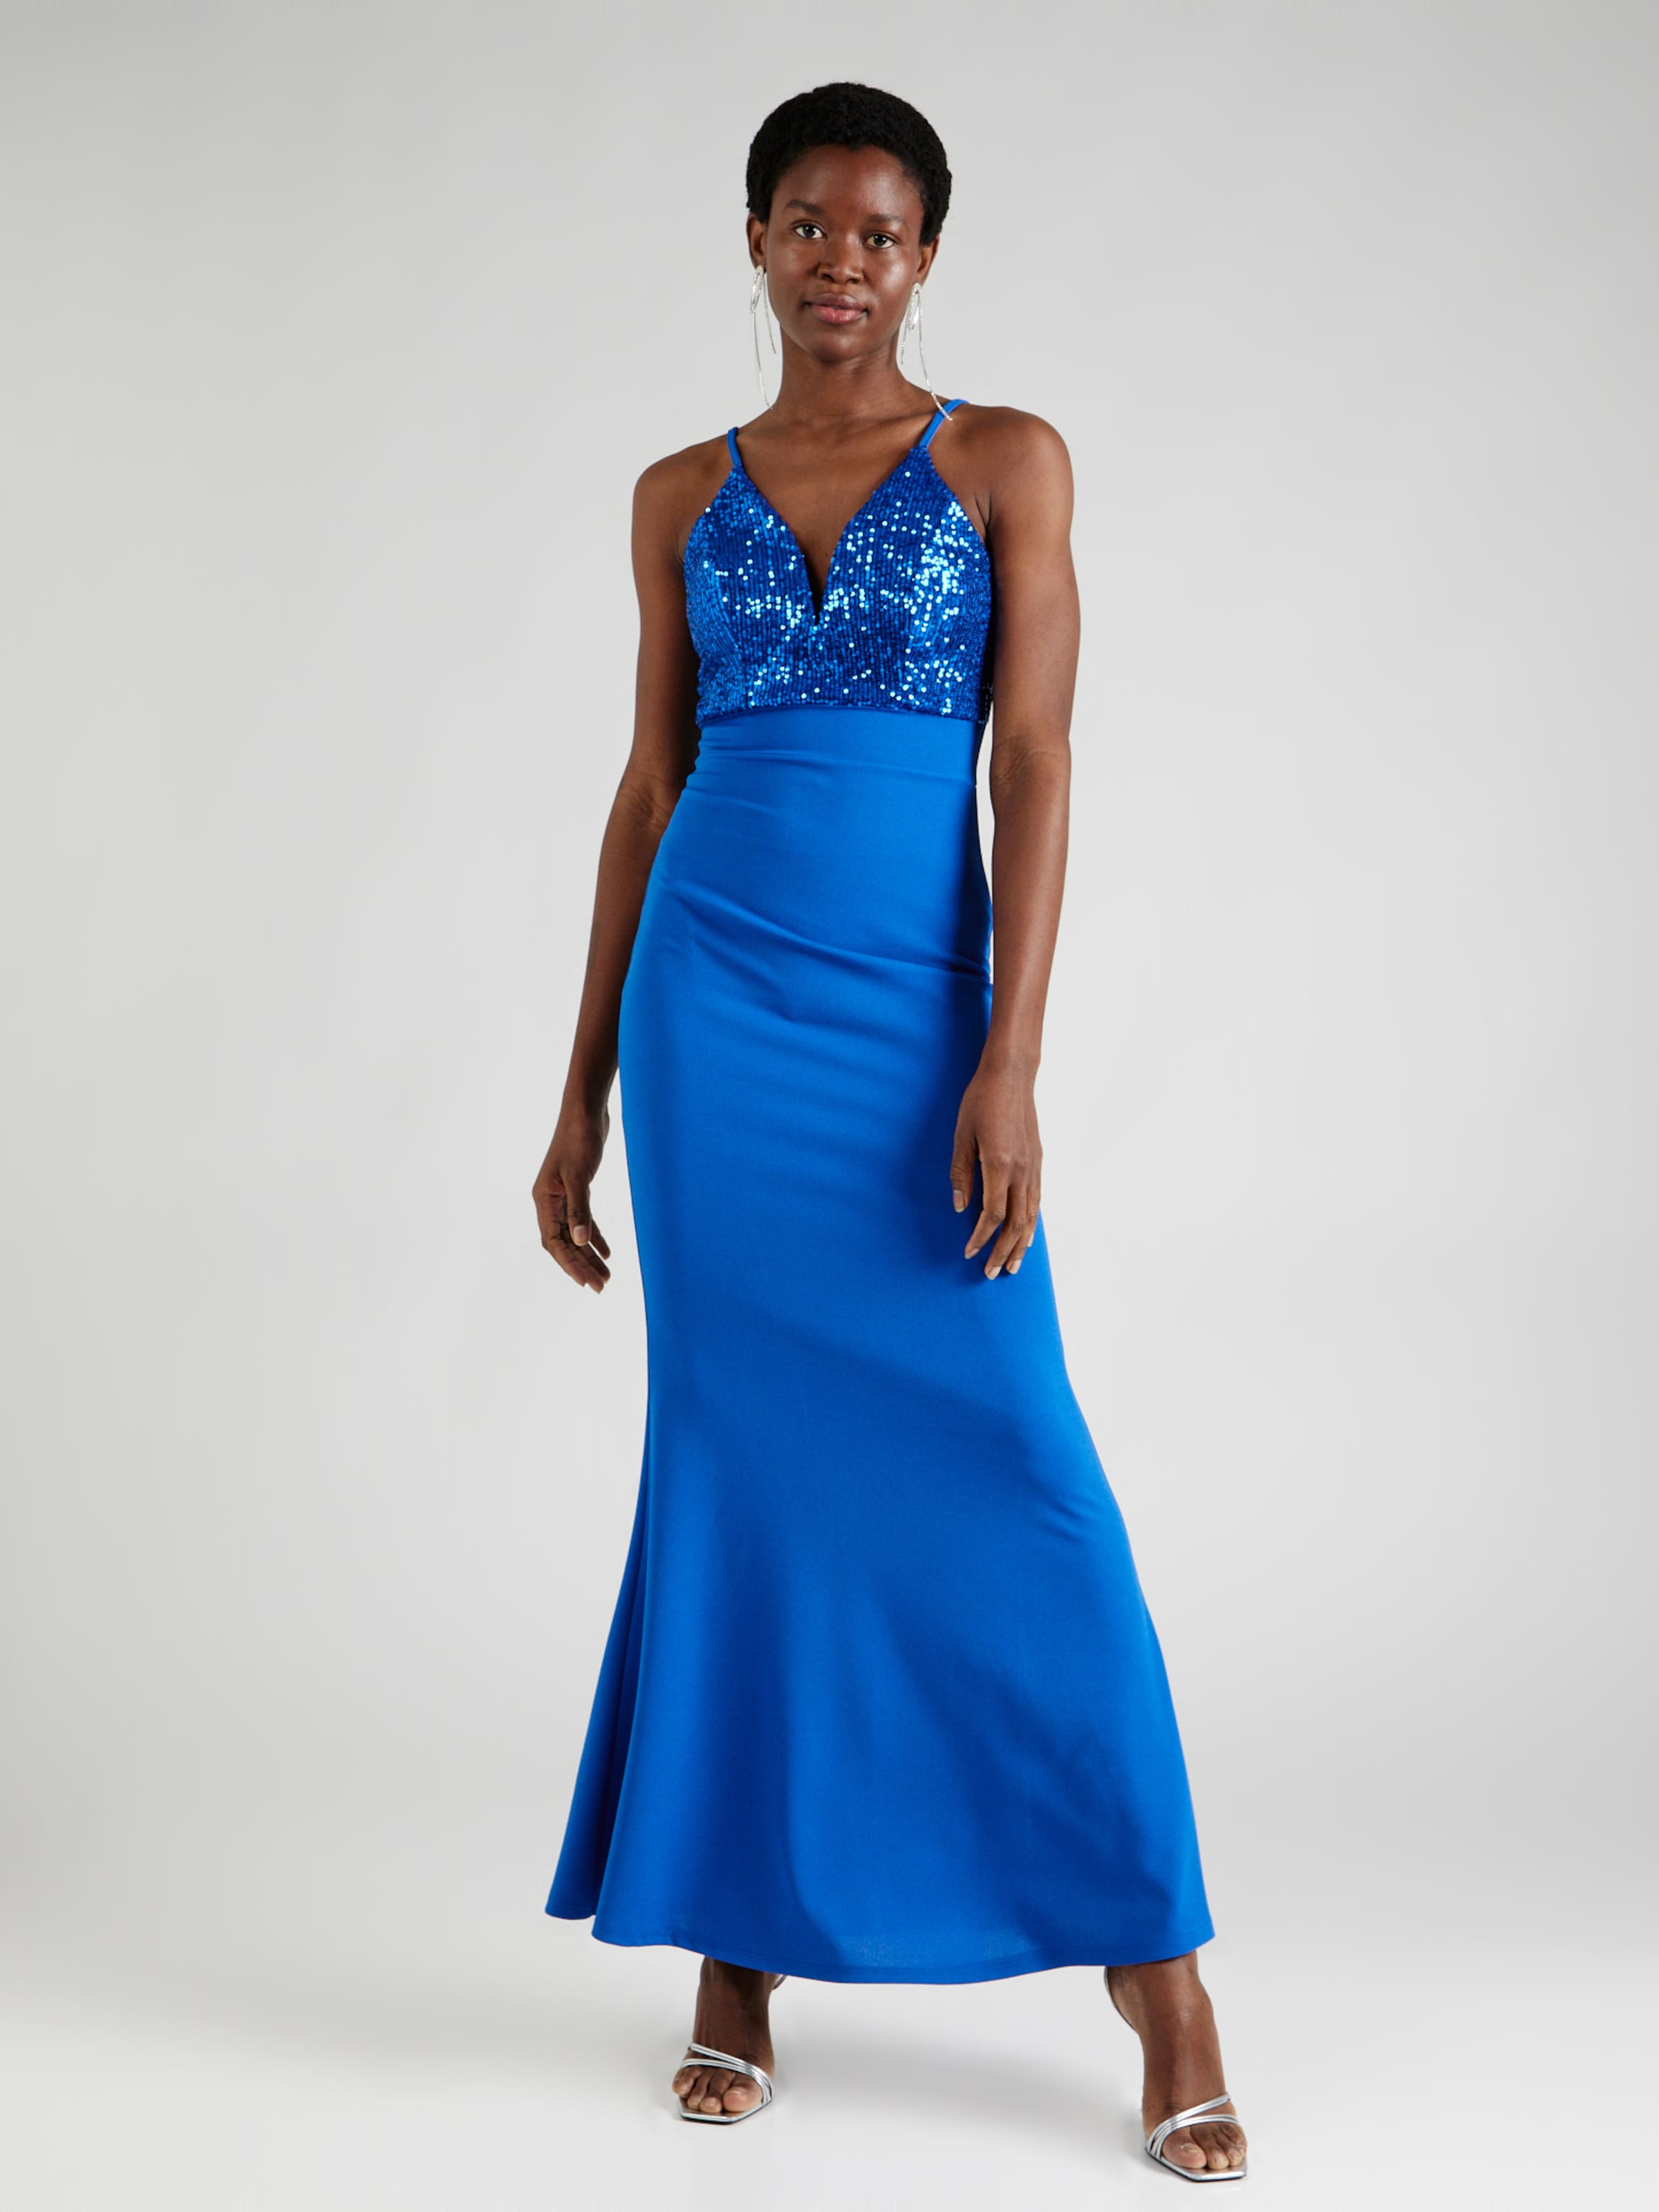 Navy Blue Formal Dresses - UCenter Dress